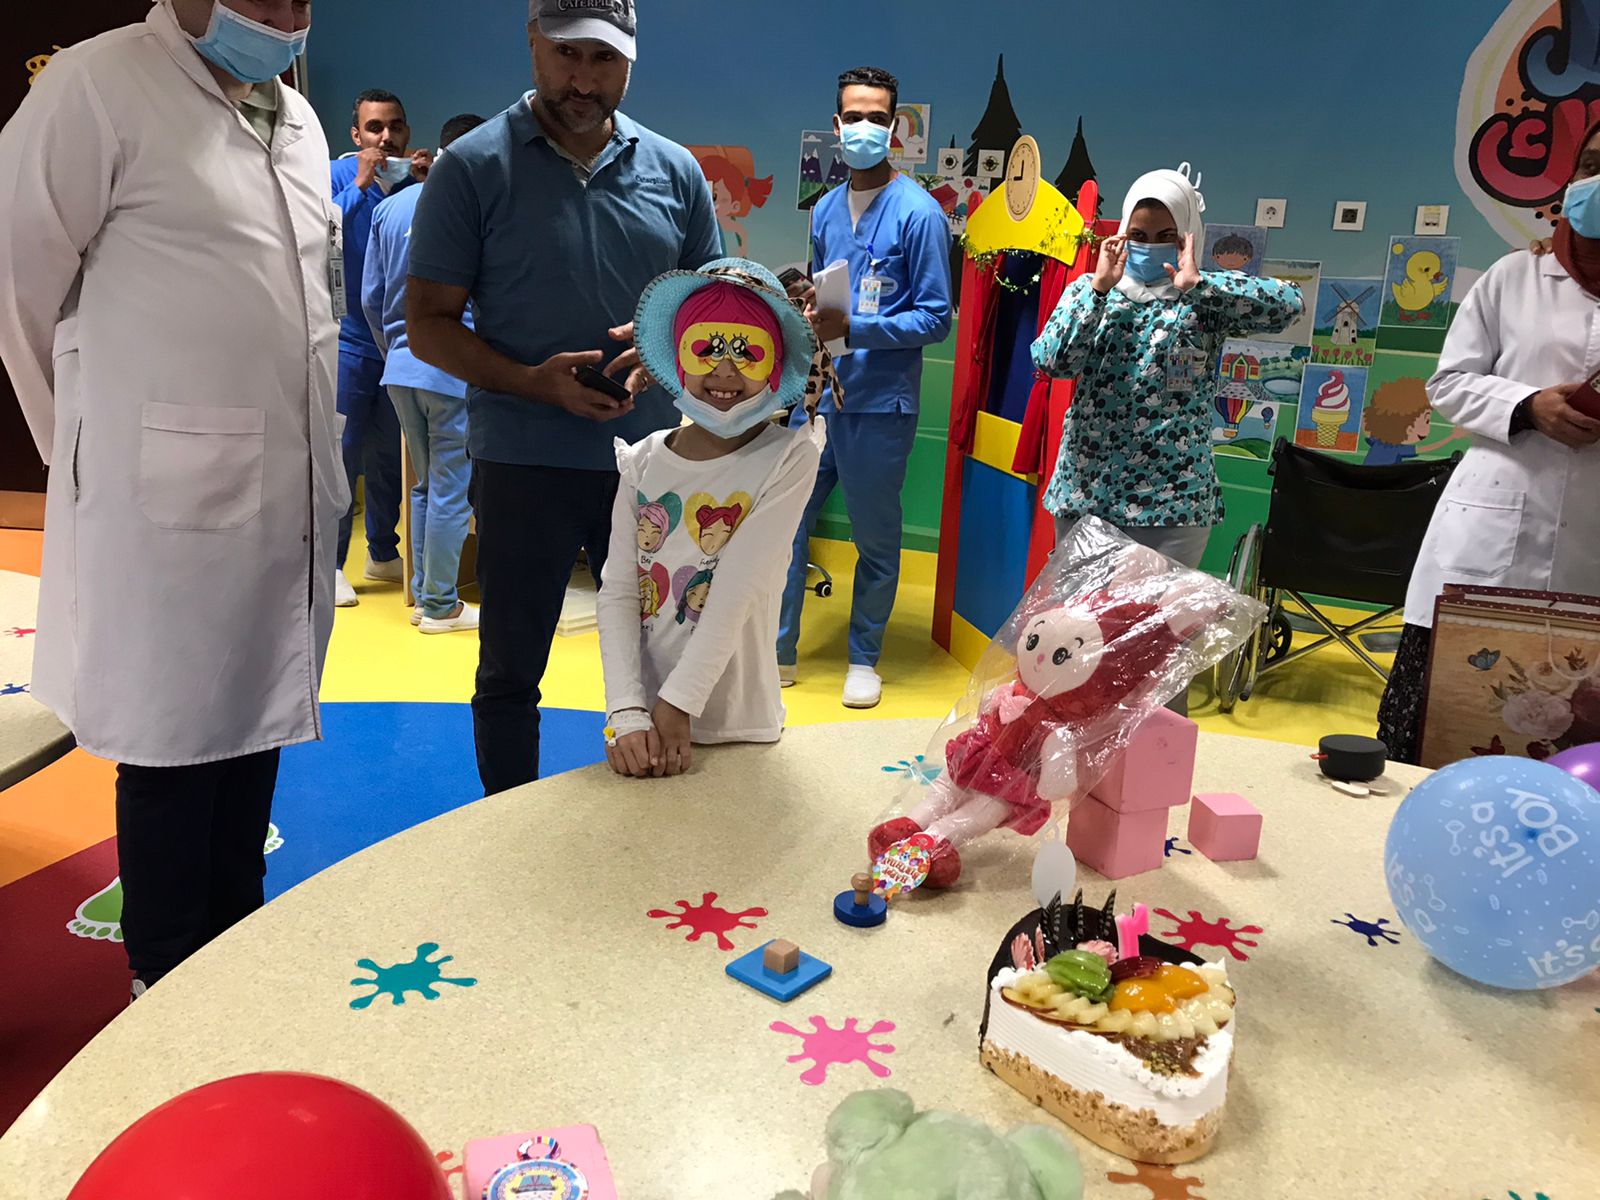 مستشفى سرطان الأقصر تنظم حفل عيد ميلاد للطفلة ليان محاربة السرطان